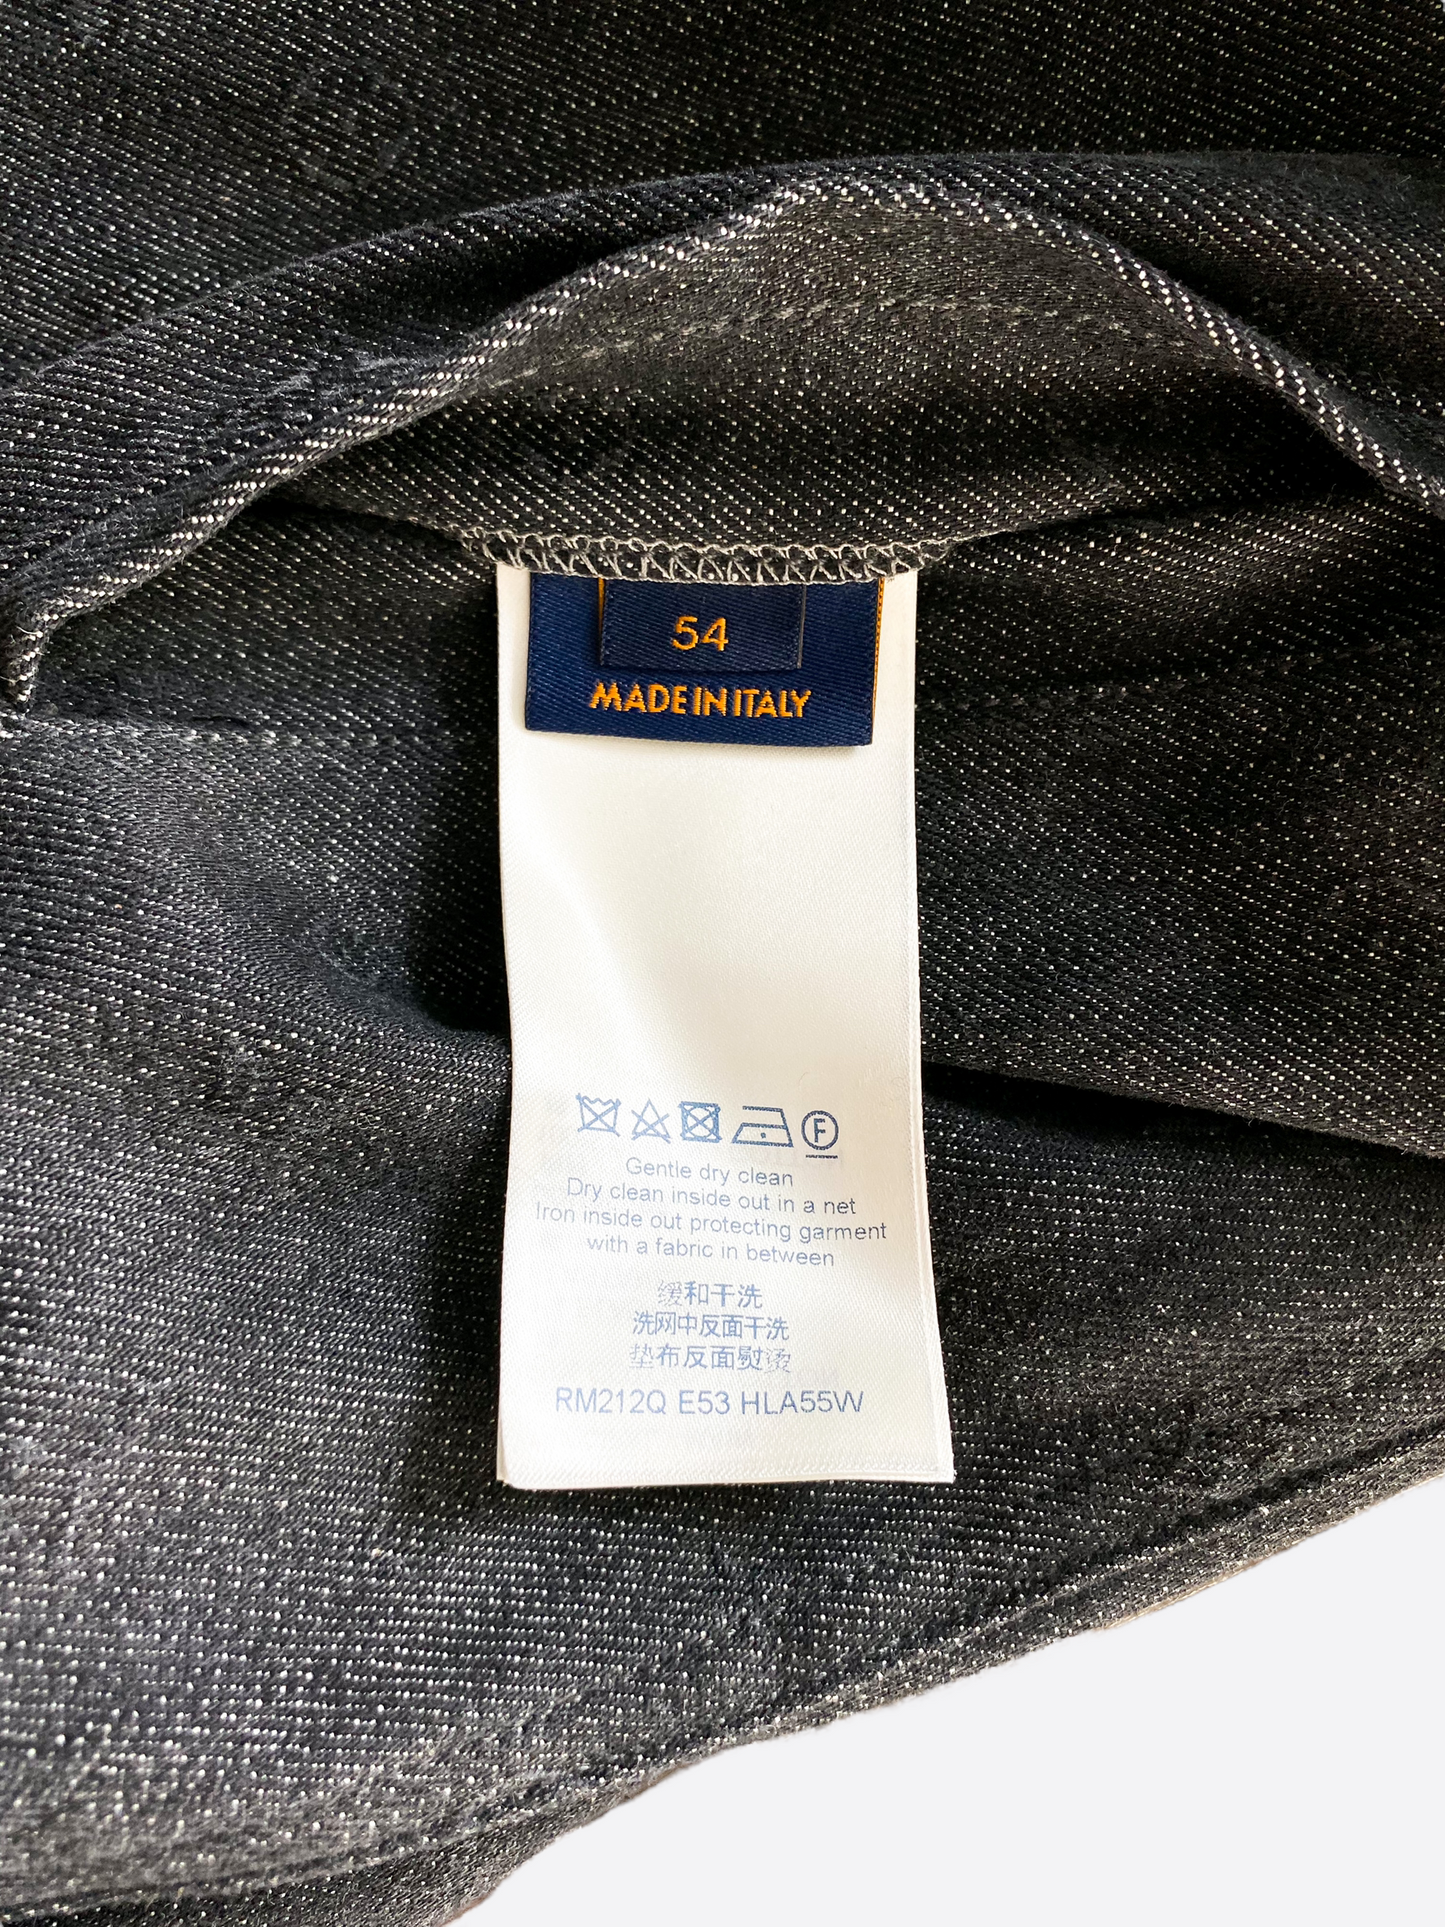 Louis Vuitton Black DNA Monogram Denim Jacket